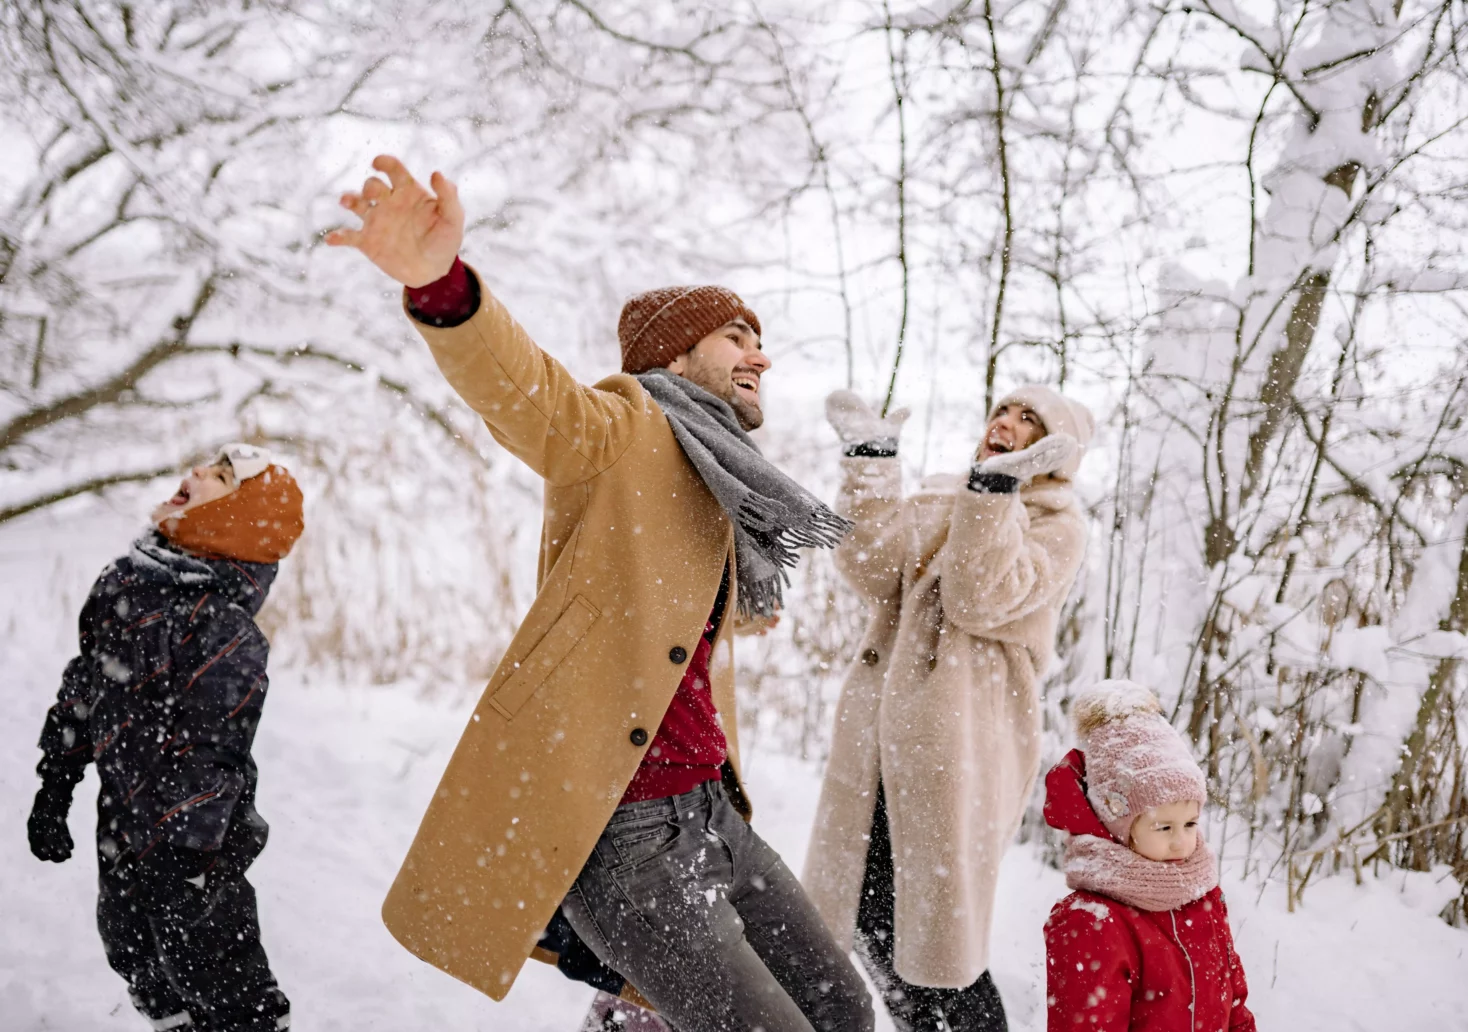 Foto in einem Beitrag von 5min.at zeigt eine Familie im Schnee spielend.